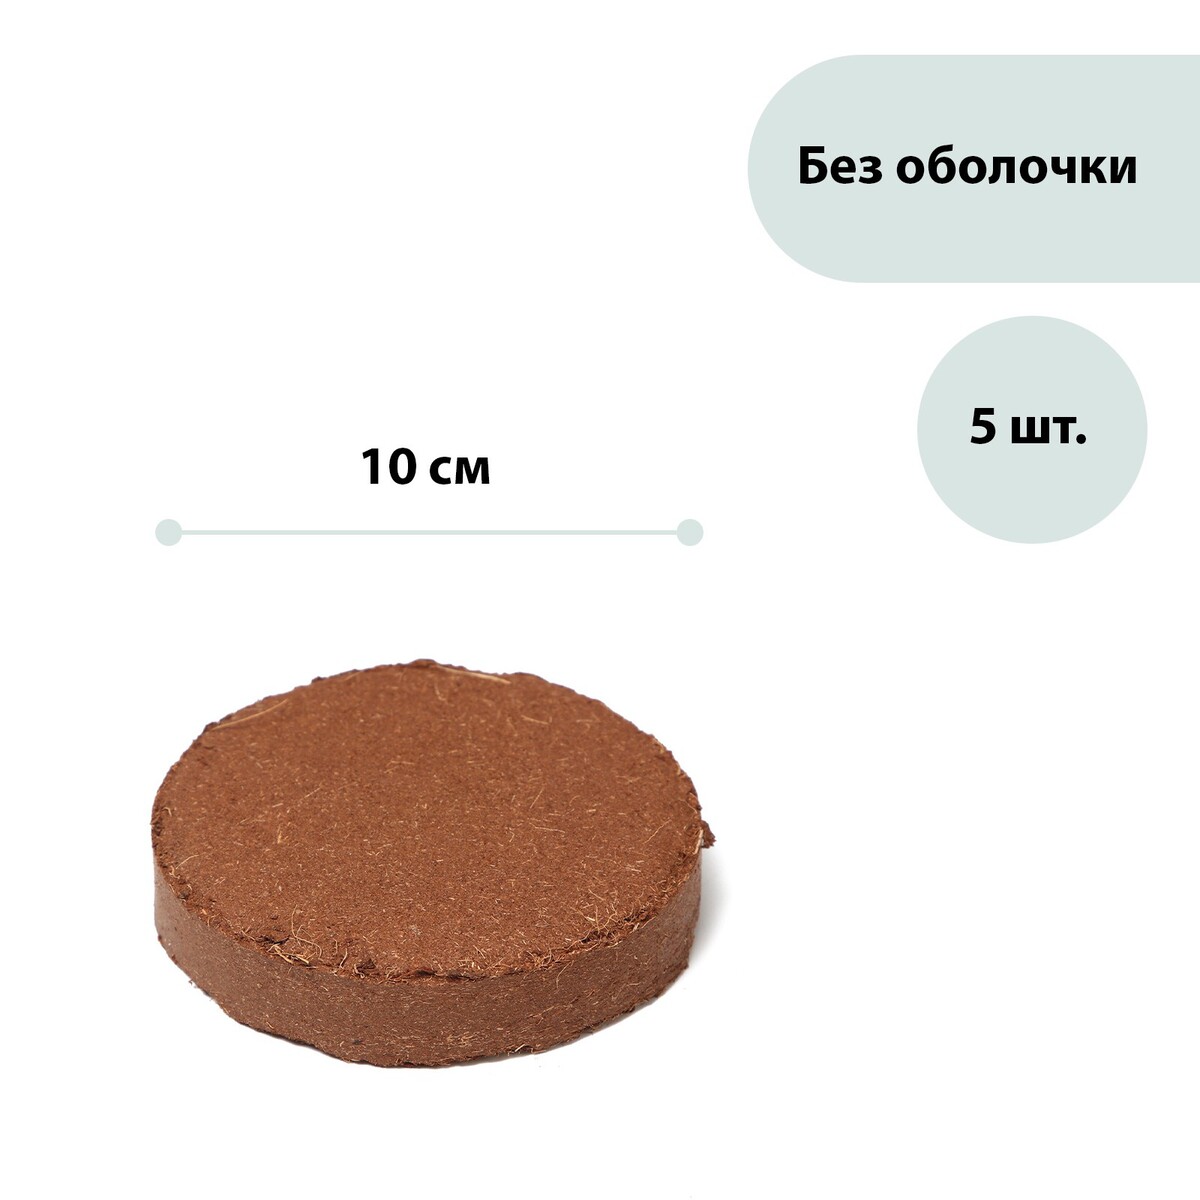 Субстрат кокосовый в таблетках, 4,5 л, d = 10 см, набор 5 шт., без оболочки, greengo плавающий дозатор для химии в таблетках kokido k789bu duc 6p утка aq12218